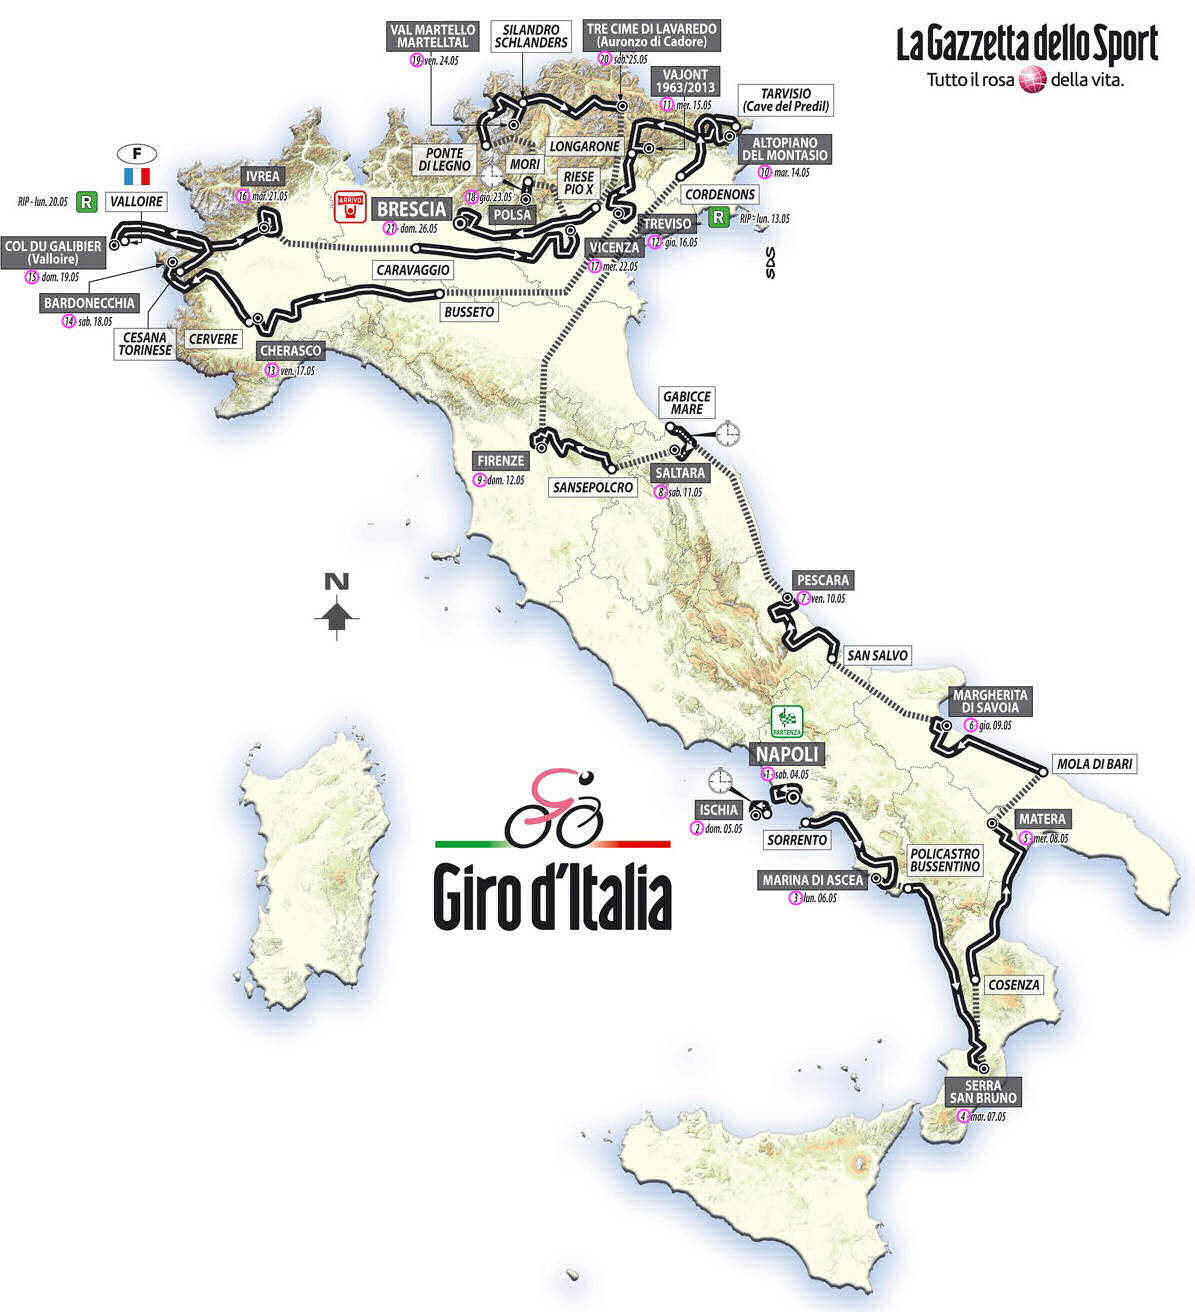 Giro 2013 map - large